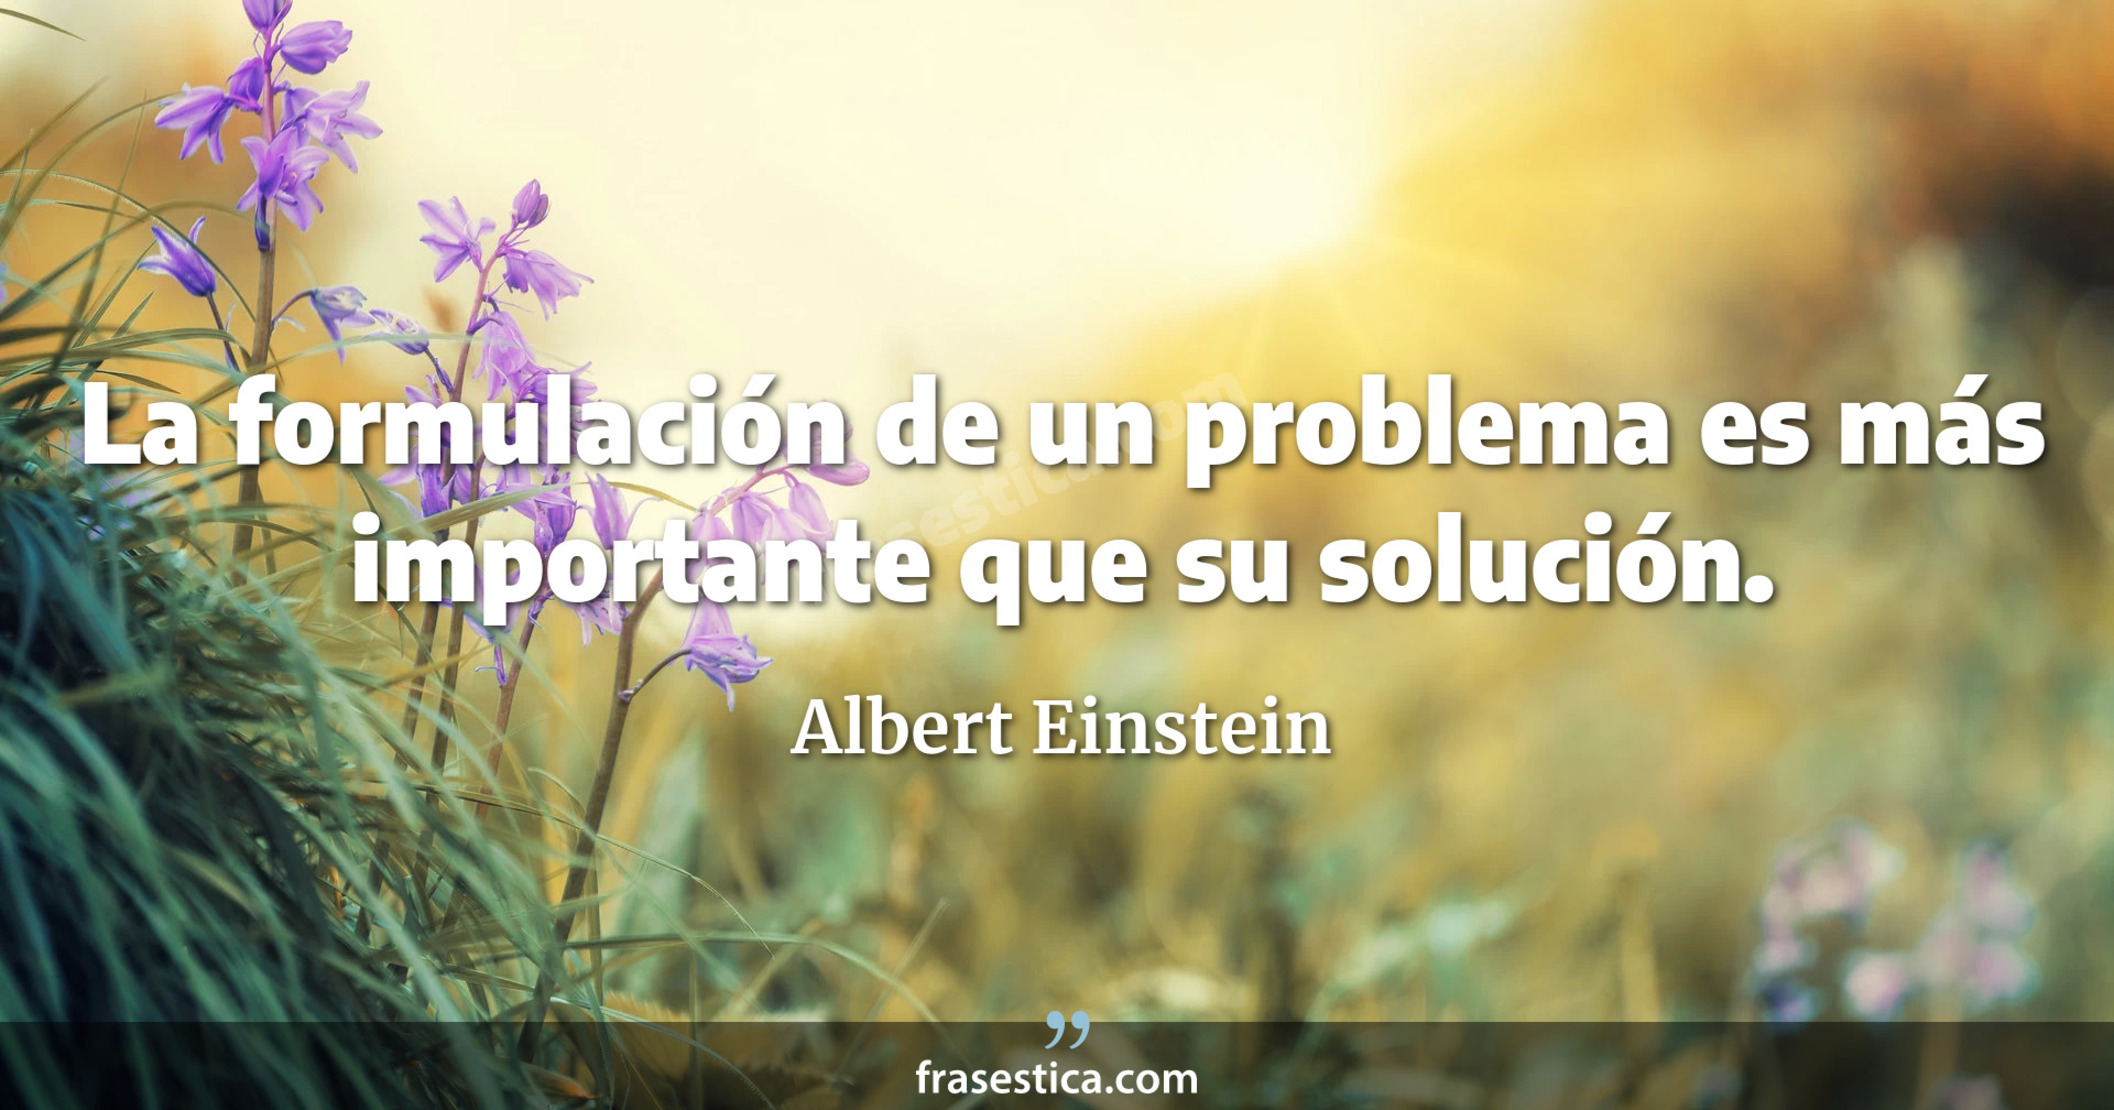 La formulación de un problema es más importante que su solución. - Albert Einstein